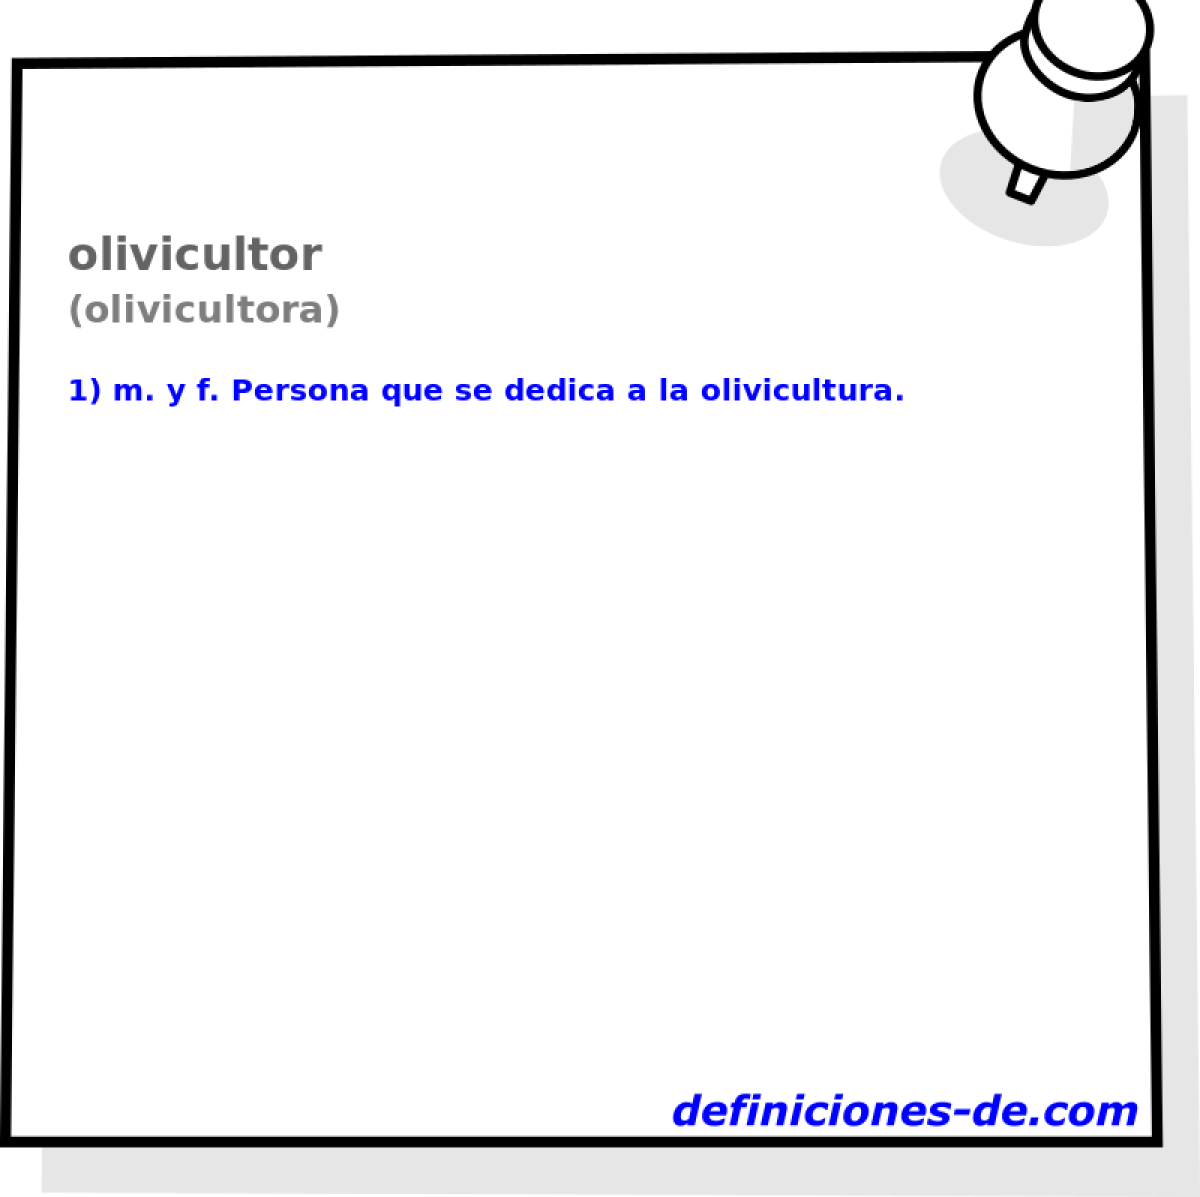 olivicultor (olivicultora)